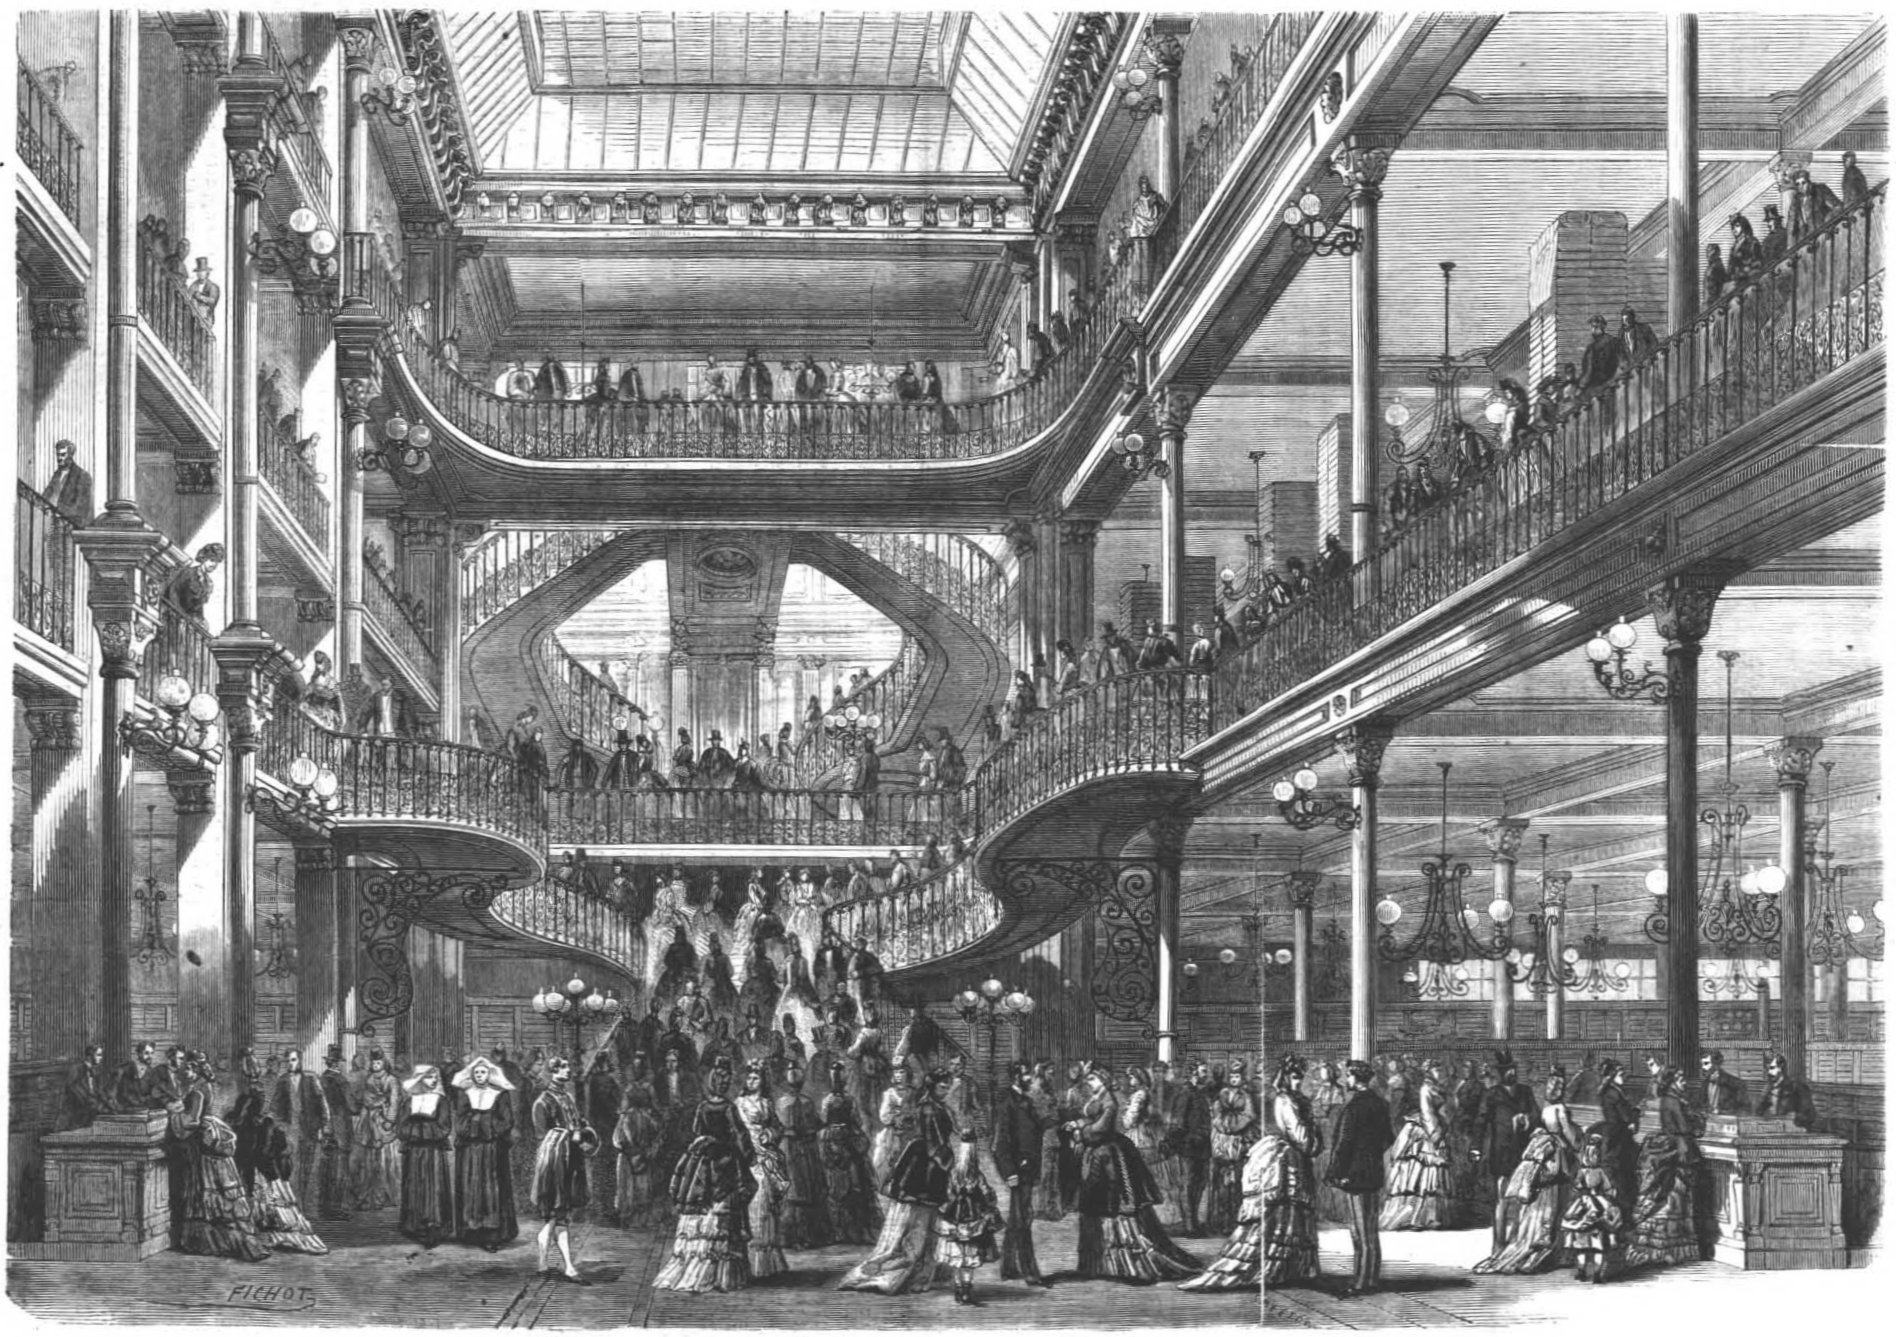 Le Bon Marché var et af de første stormagasiner i verden og åbnede i Paris som stormagasin i 1850 og har givet Émile Zola inspiration til roman The Ladies’ Paradise.